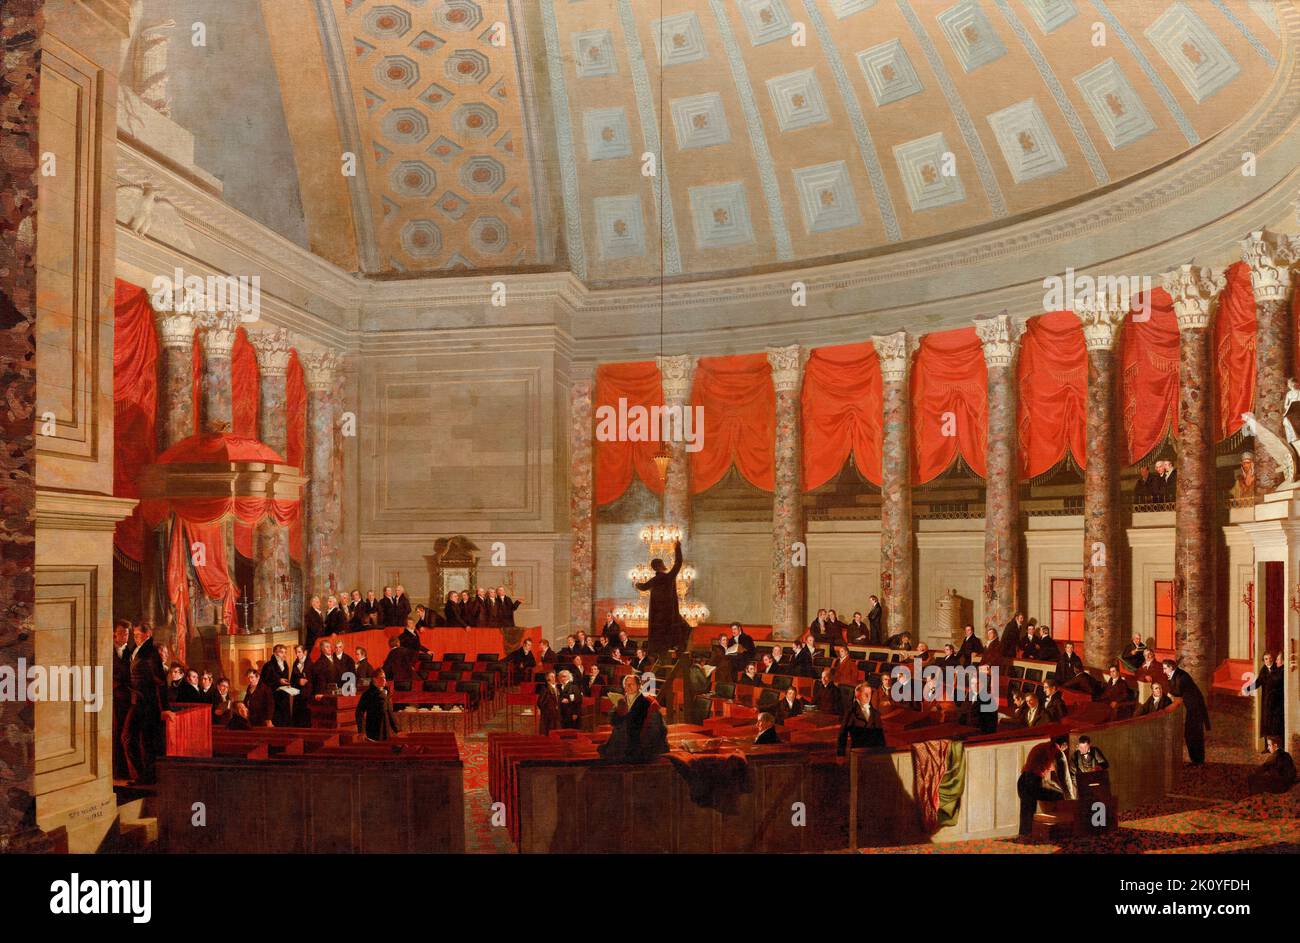 Repräsentantenhaus, Gemälde des Innenraums der Kammer in Öl auf Leinwand von Samuel Finley Breese Morse, 1822 Stockfoto